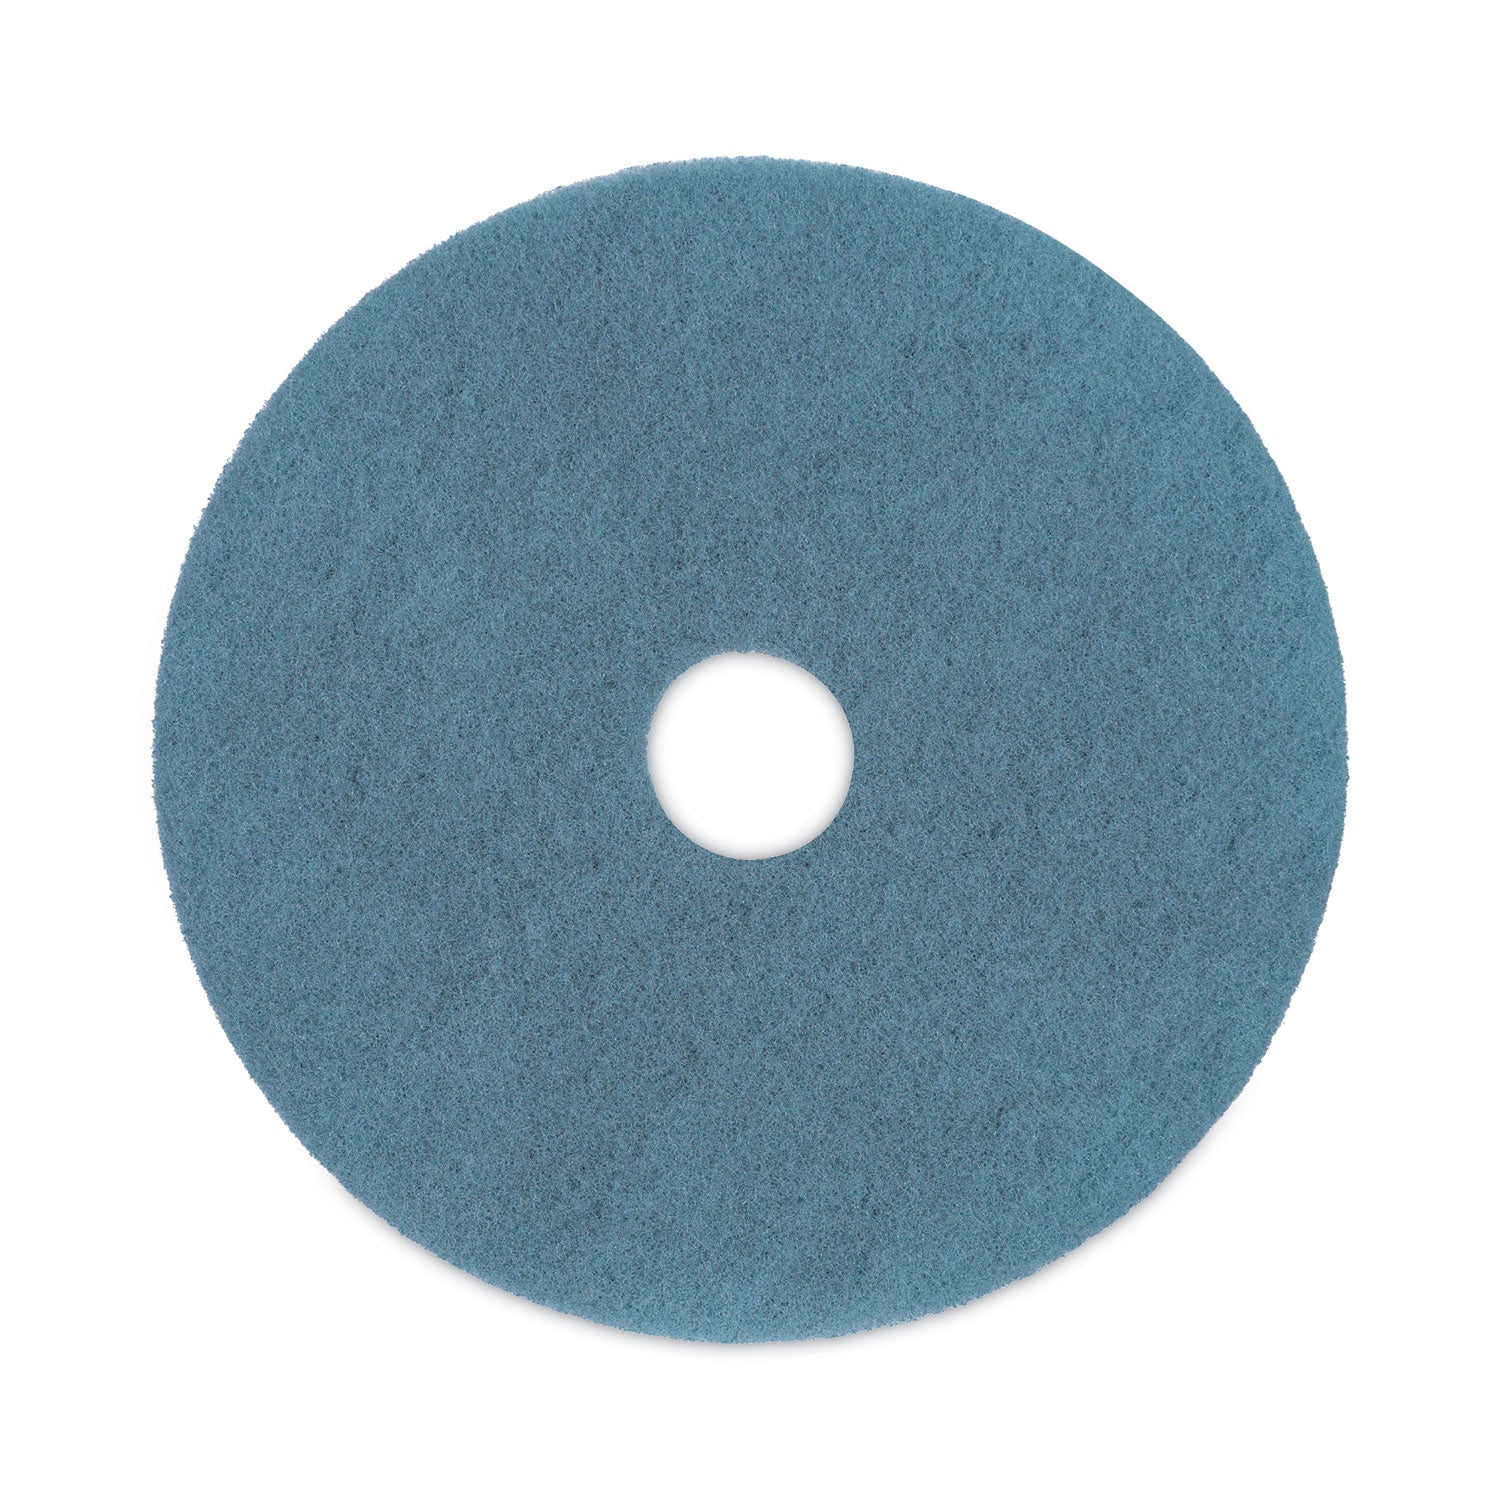 burnishing-floor-pads-20-diameter-aqua-5-carton_bwk4020aqu - 1